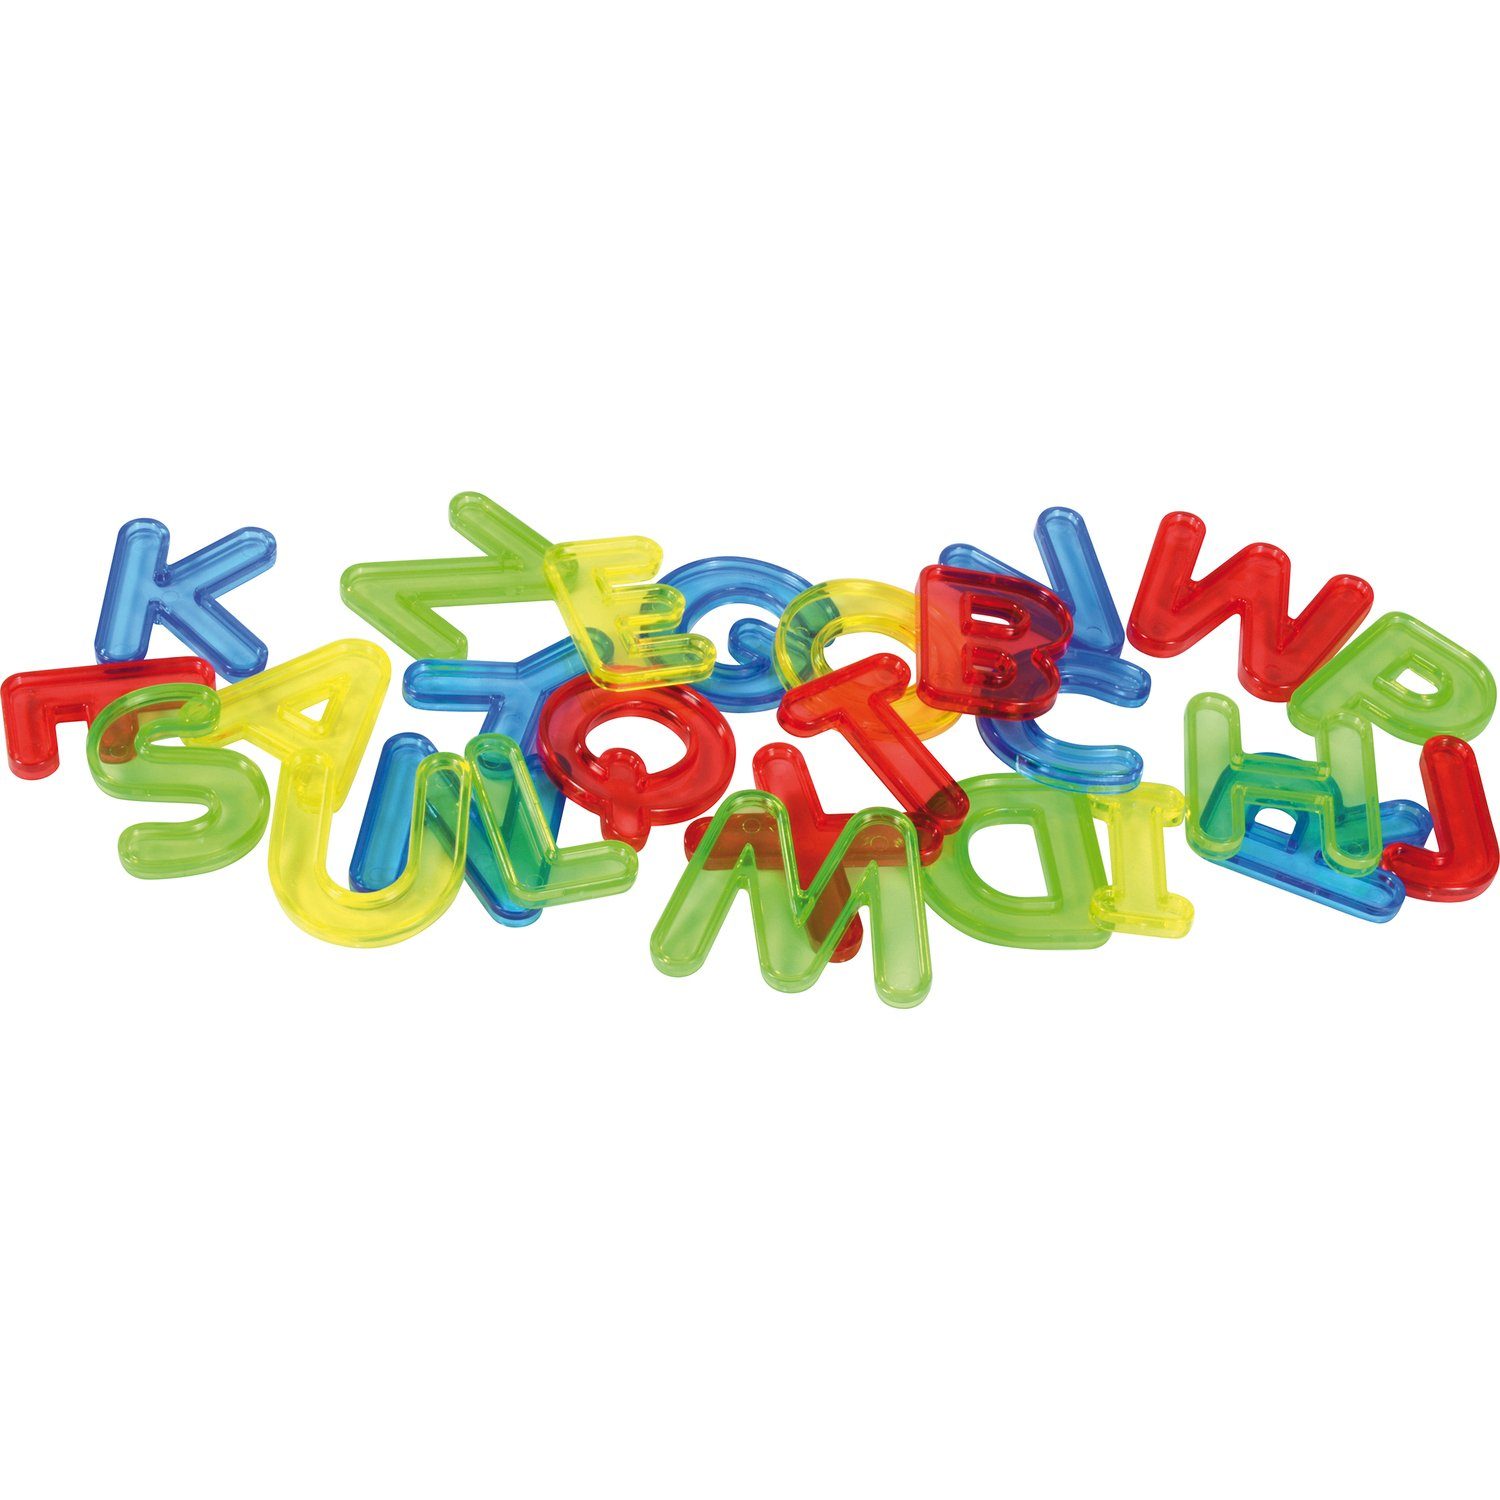 EDUPLAY Lernspielzeug Transparente Buchstaben | Lernspielzeug